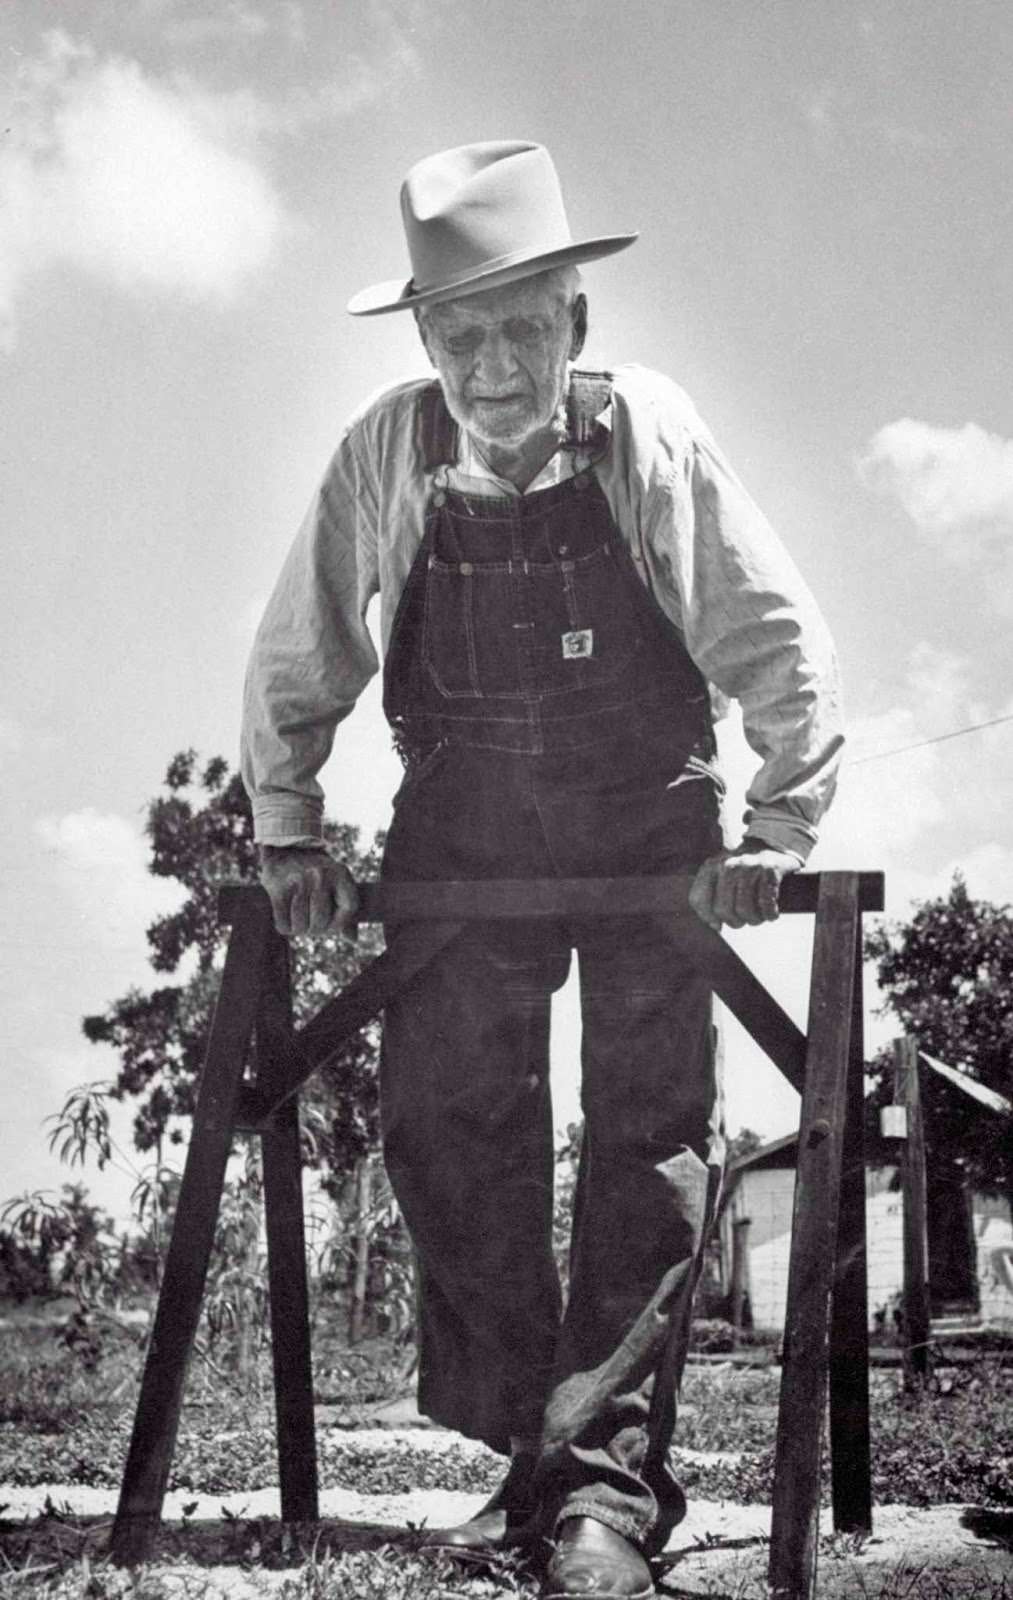 Self-proclaimed “Confederate Civil War veteran” walking through his yard. 1956.